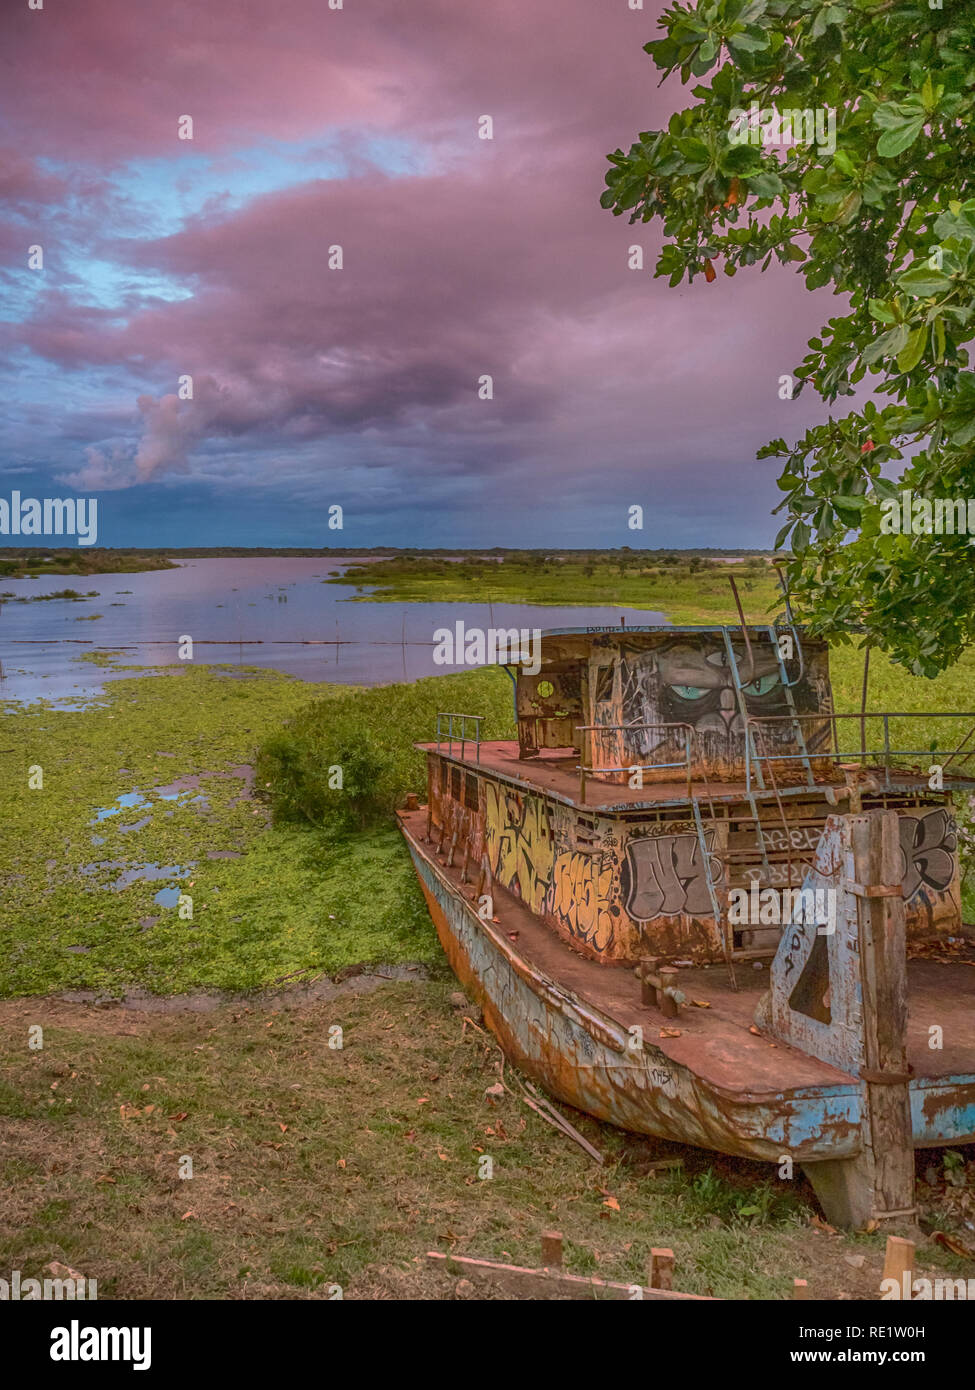 Iquitos, Perù- 28 Marzo 2018: il tramonto. Vista di una barca arrugginita, raibow e il fiume Itaya nel centro di Iquitos, Loreto, Perù. Amazon Foto Stock